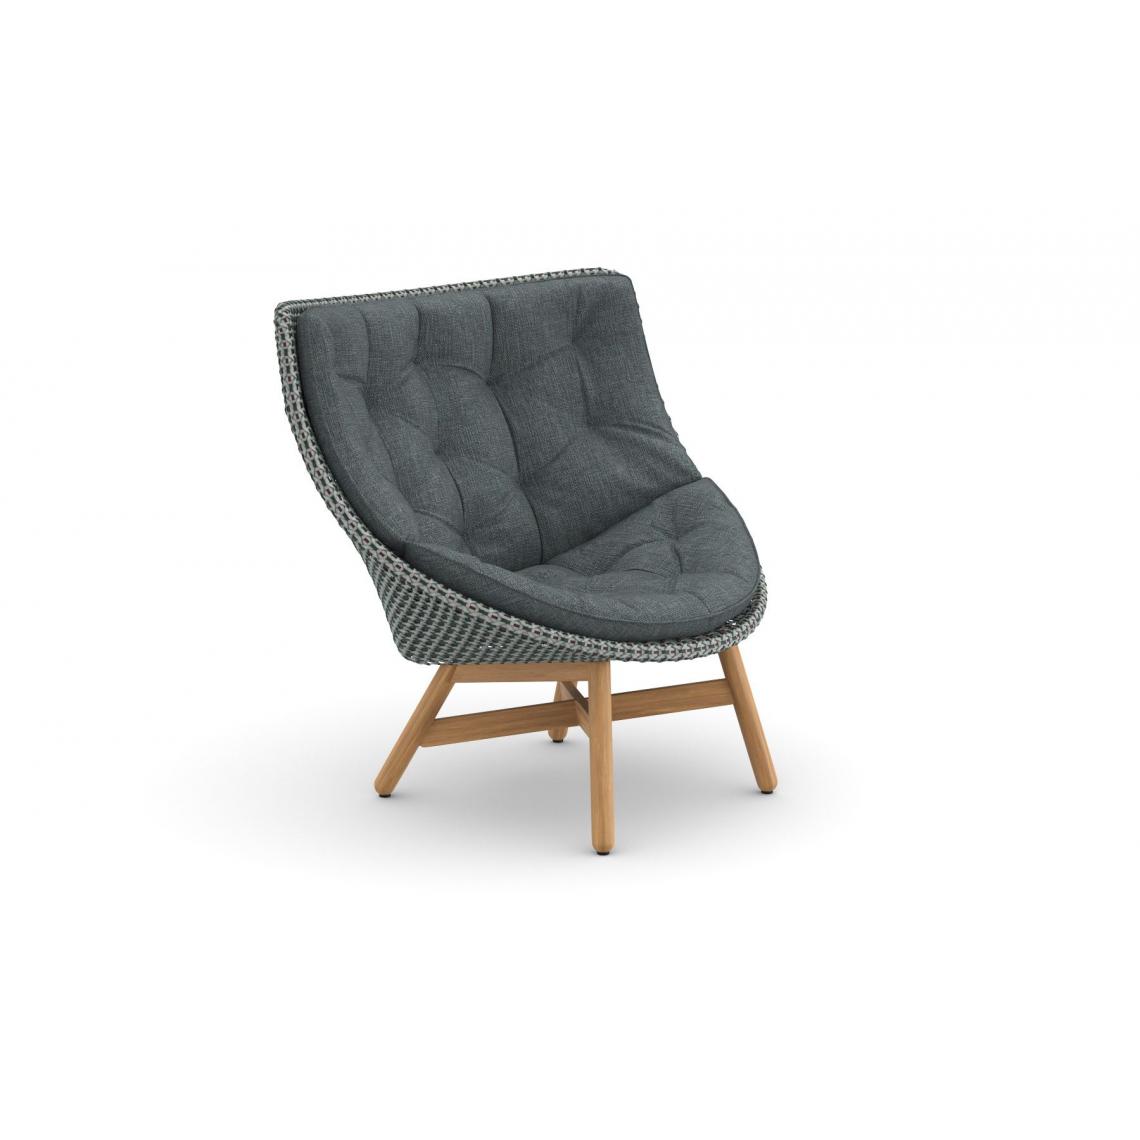 Dedon - Bergère Mbrace Wing Chair - Twist turquoise foncé - Teck - Baltic - Fauteuil de jardin